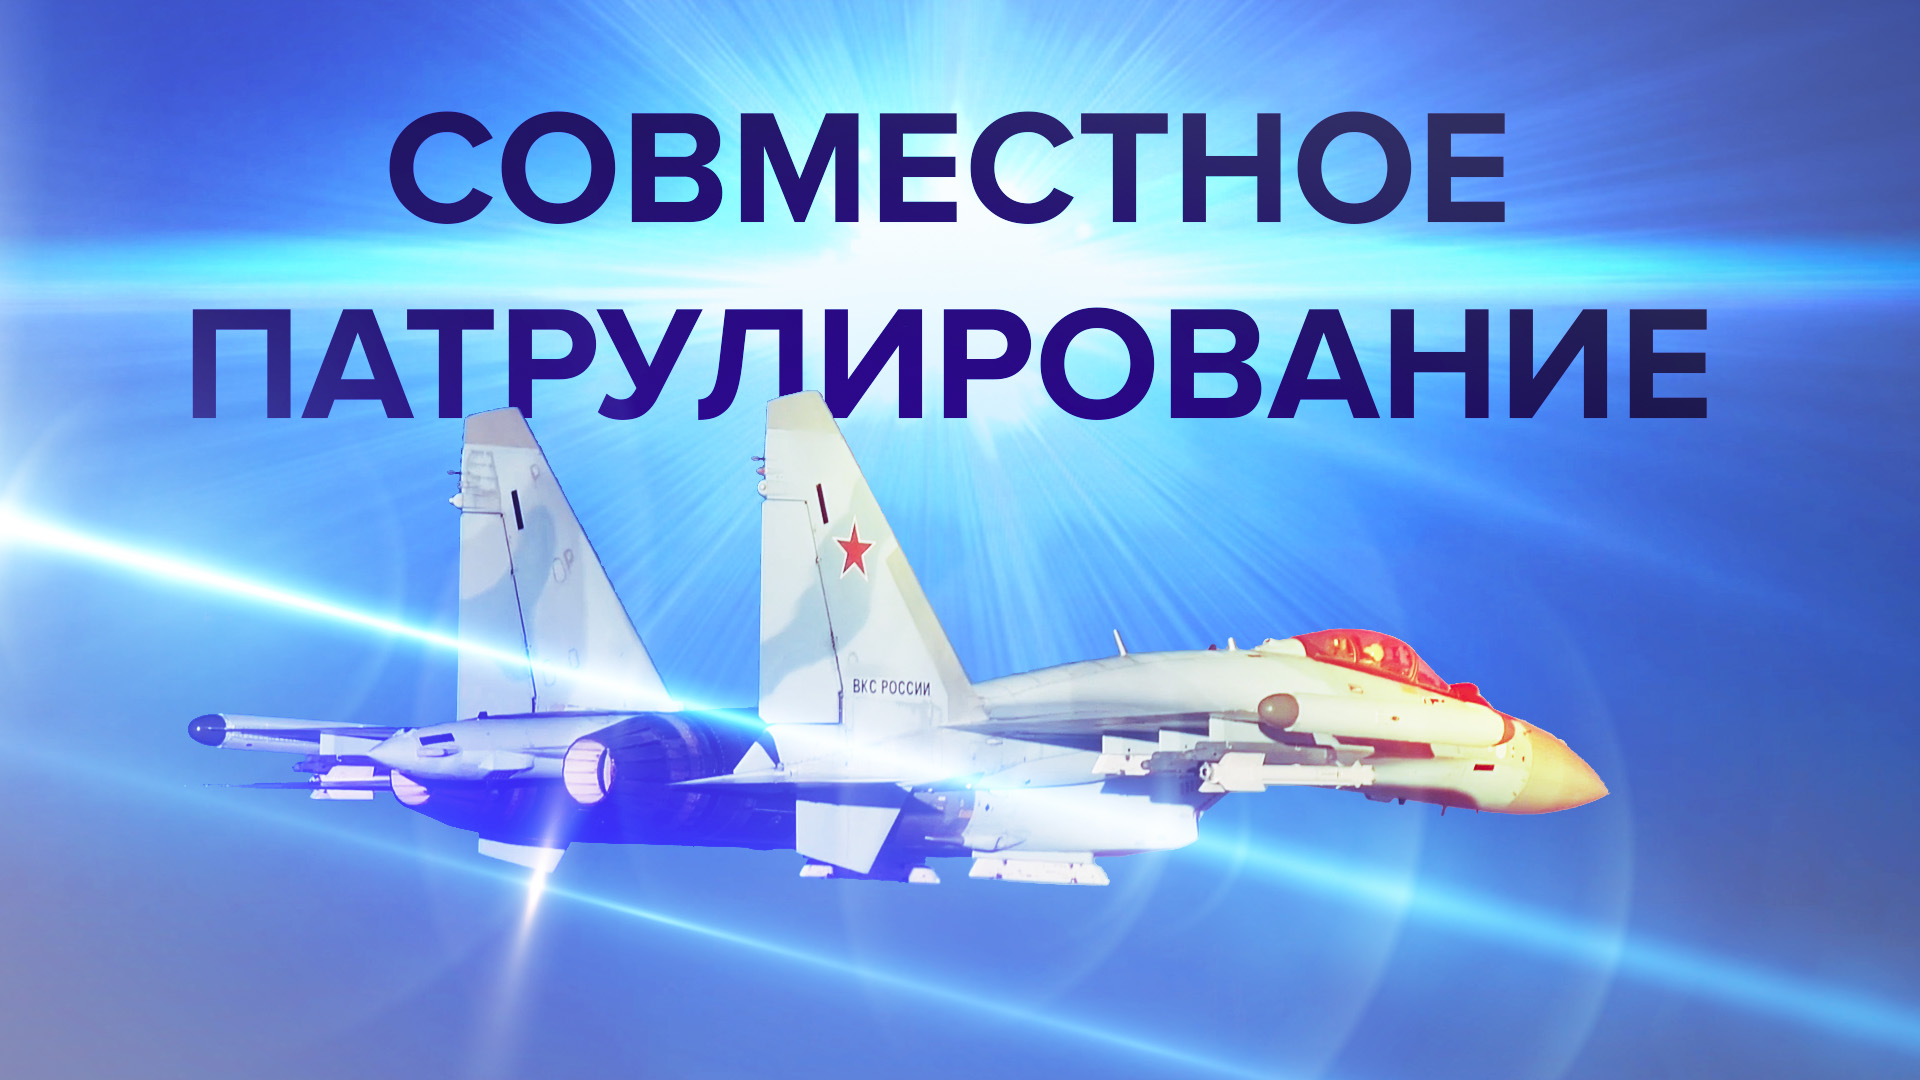 ВКС России и ВВС Китая провели совместное патрулирование восточных морей